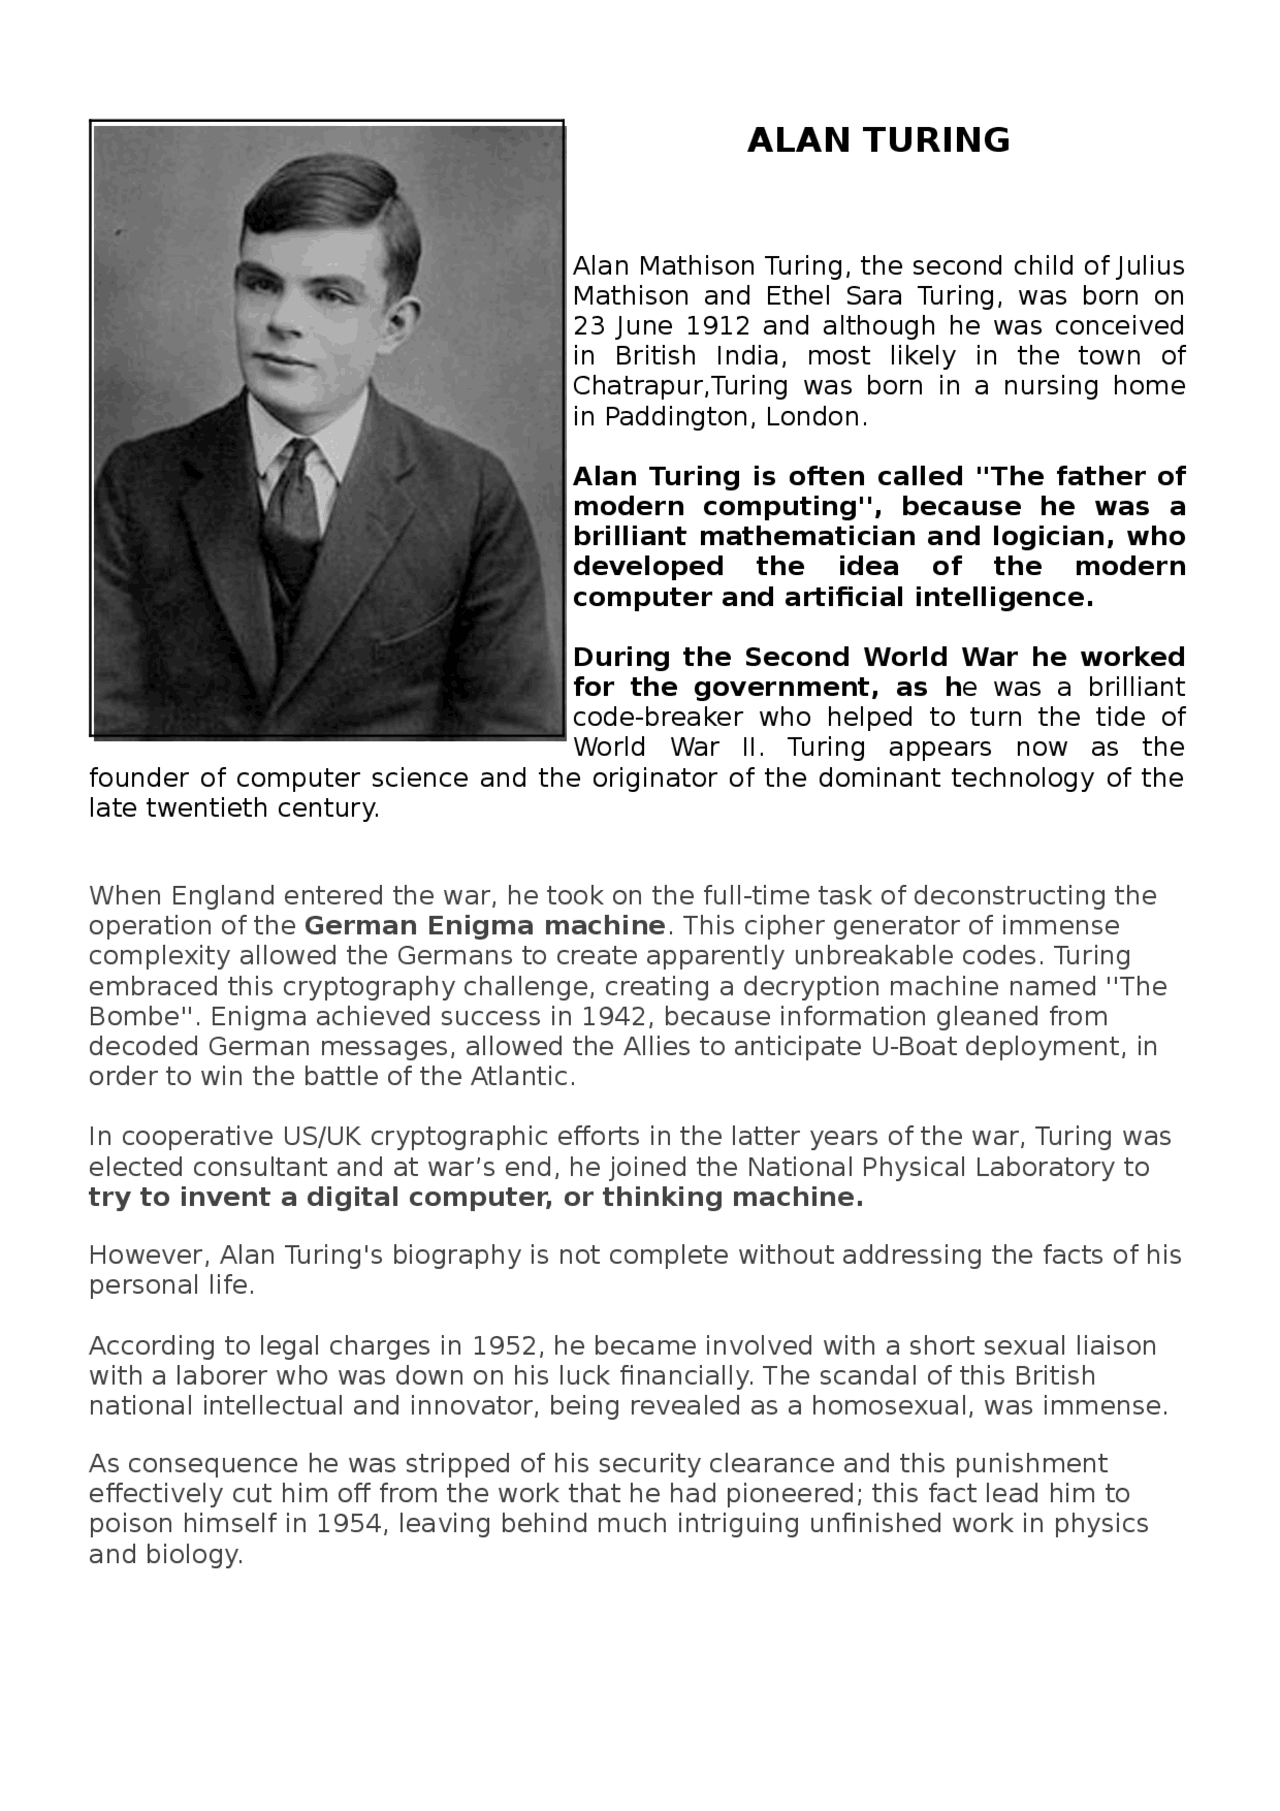  Alan Turing biografia